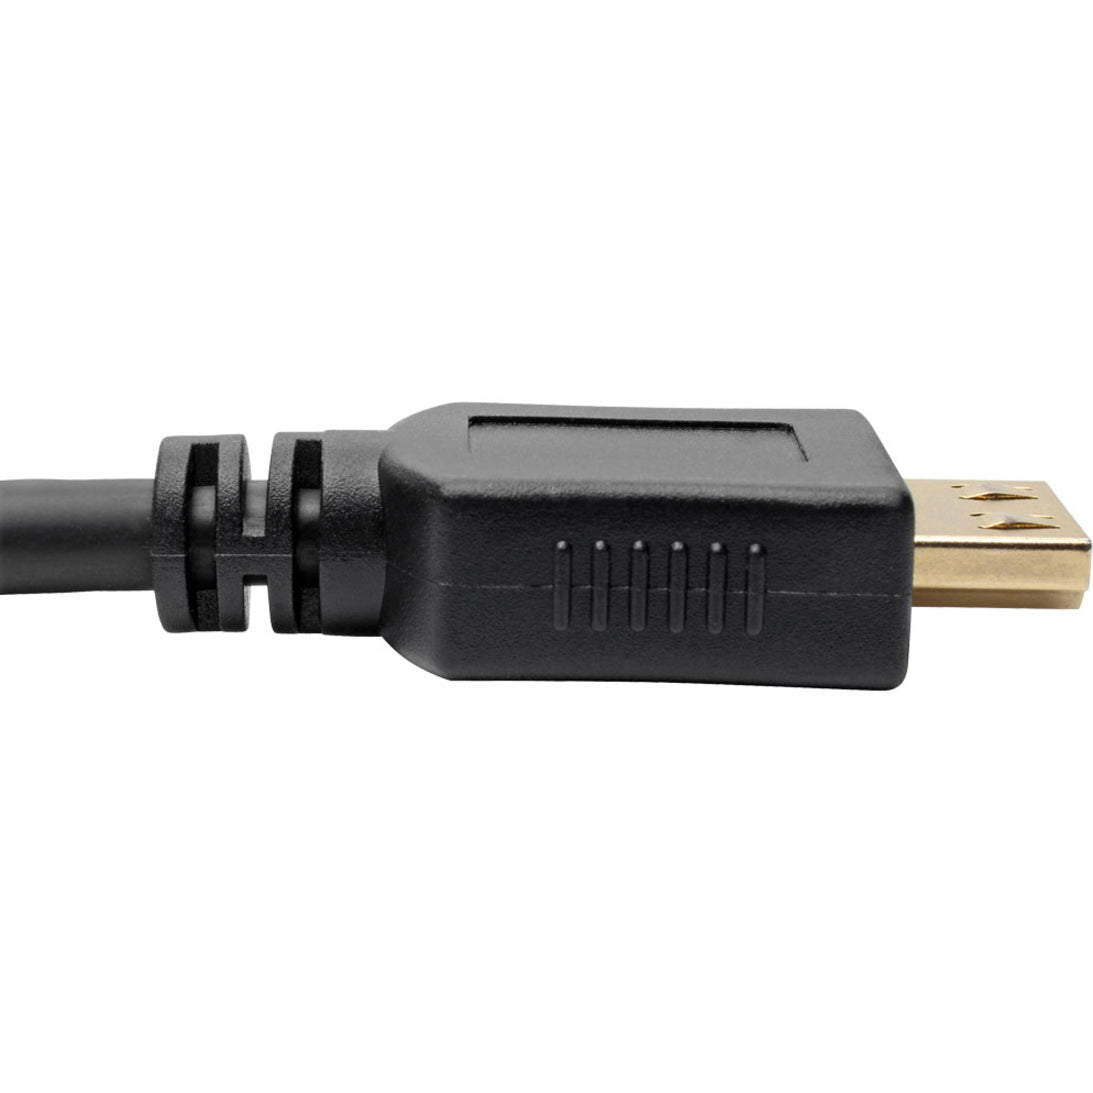 Tripp Lite P568-016-BK-GRP High-Speed HDMI-Kabel 16 ft. mit Greifsteckern - 4K Schwarz